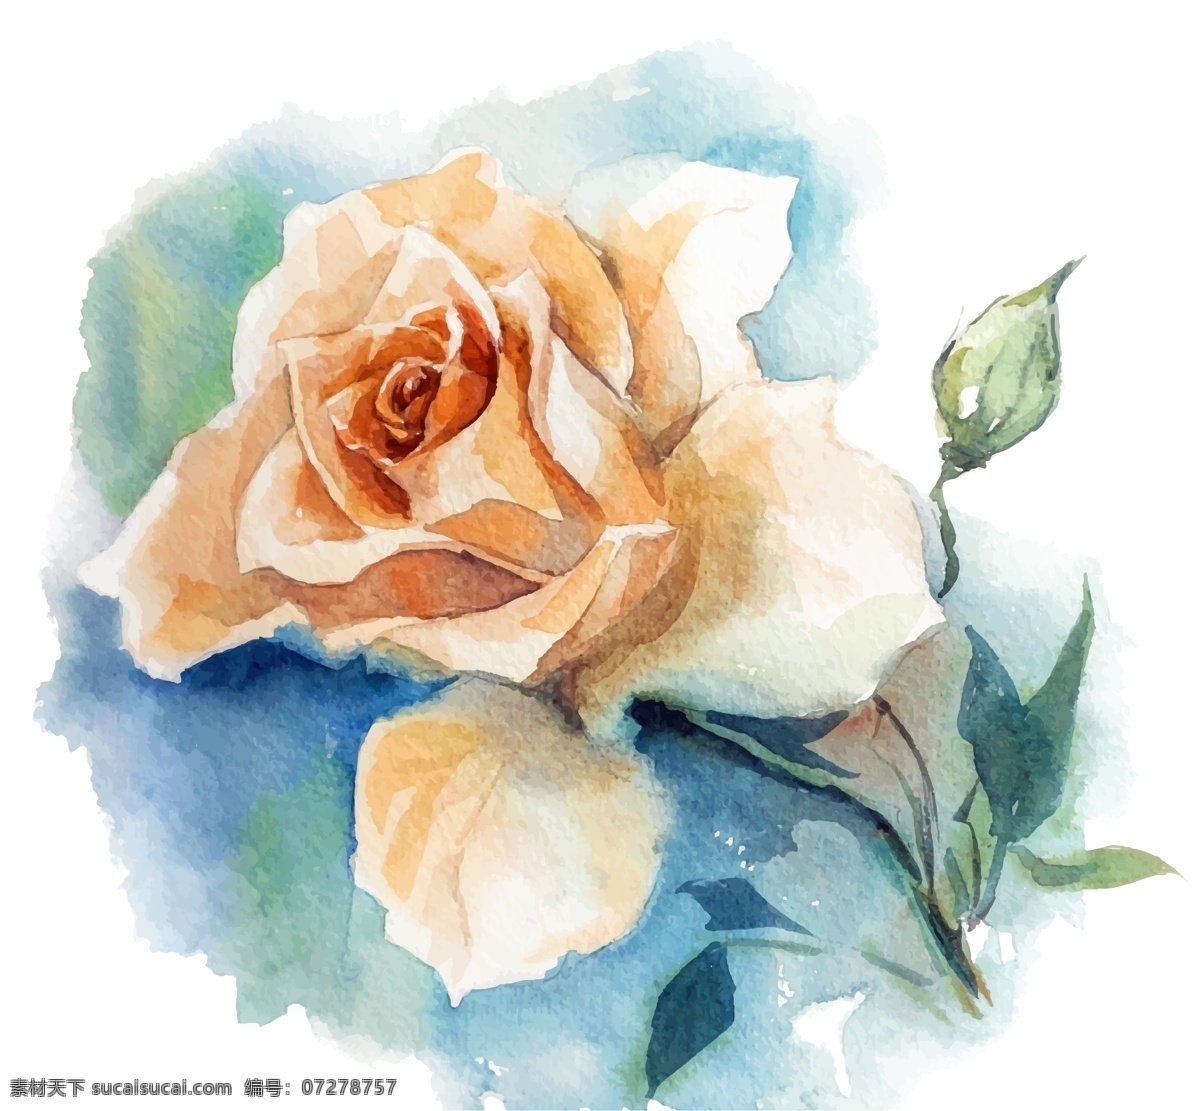 水彩 绘 时尚 白 玫瑰花 插画 植物 水彩绘 手绘 白玫瑰